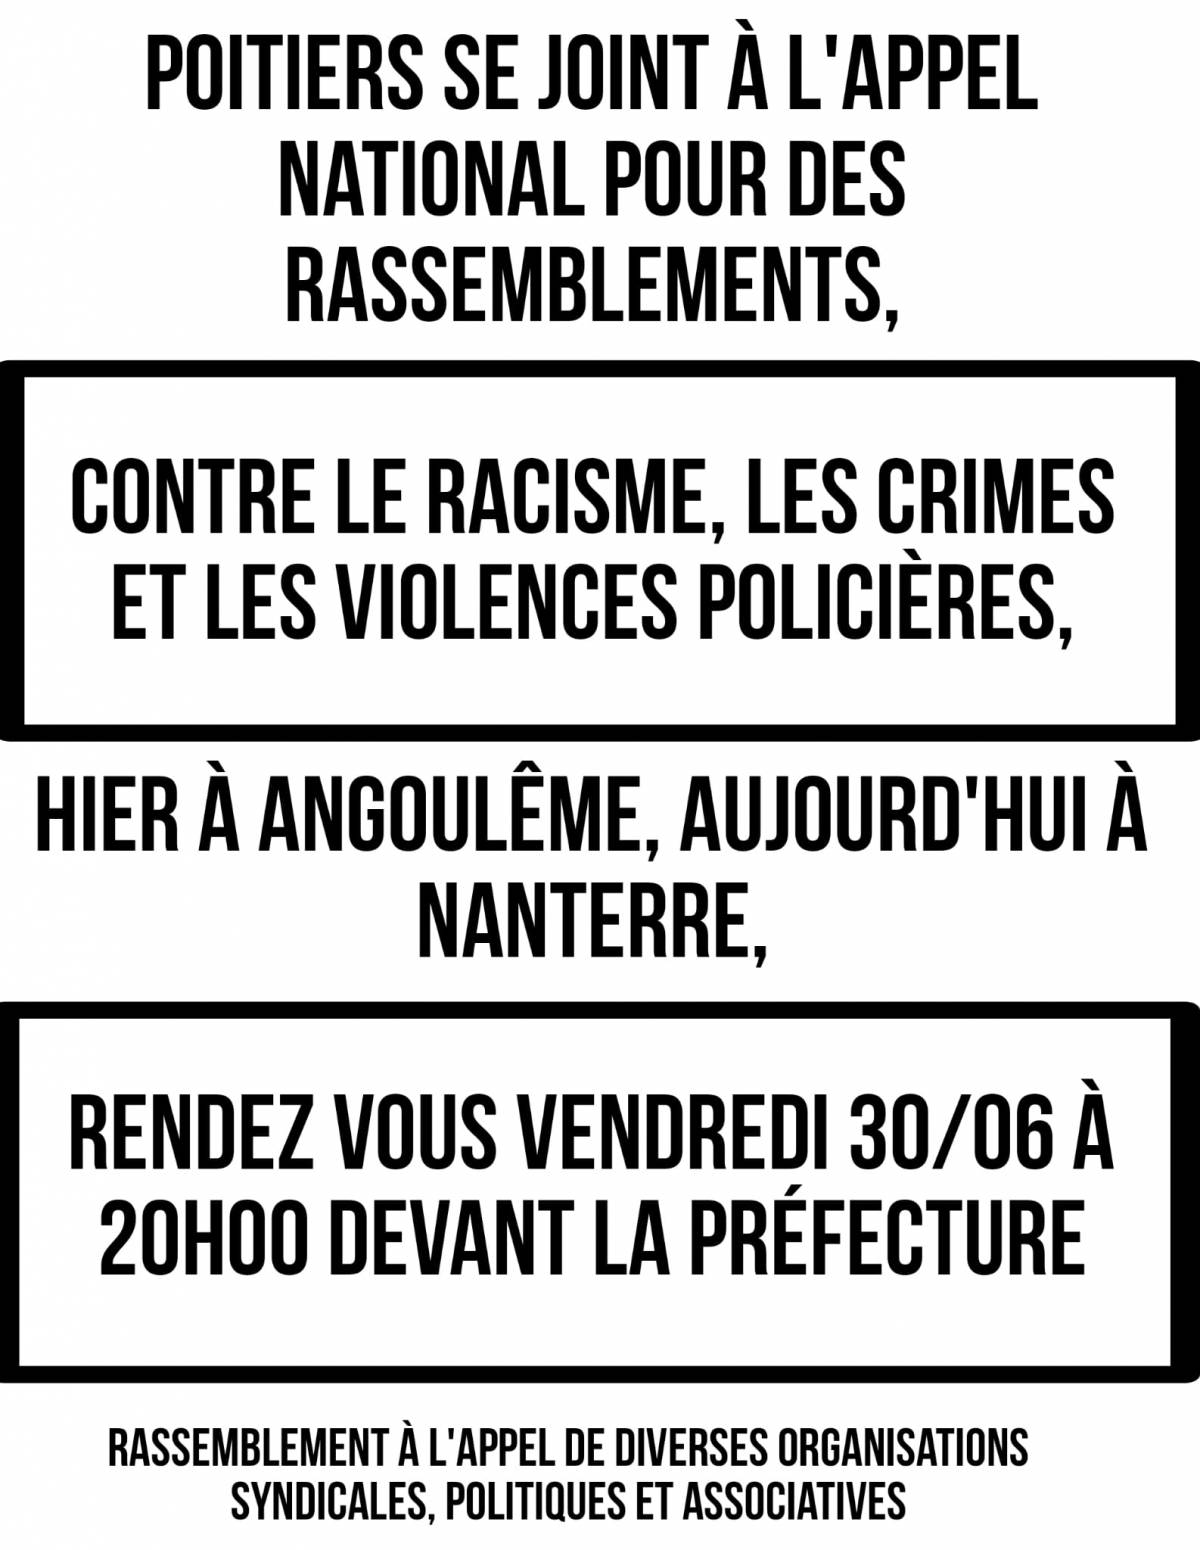 Solidaires 86 appelle à un rassemblement ce soir vendredi 31 juin à 20h devant la Préfecture de Poitiers contre les violences et crimes policiers, suite au meurtre de Nahel.  Soyons nombreux-ses pour dire "Plus jamais ça" !